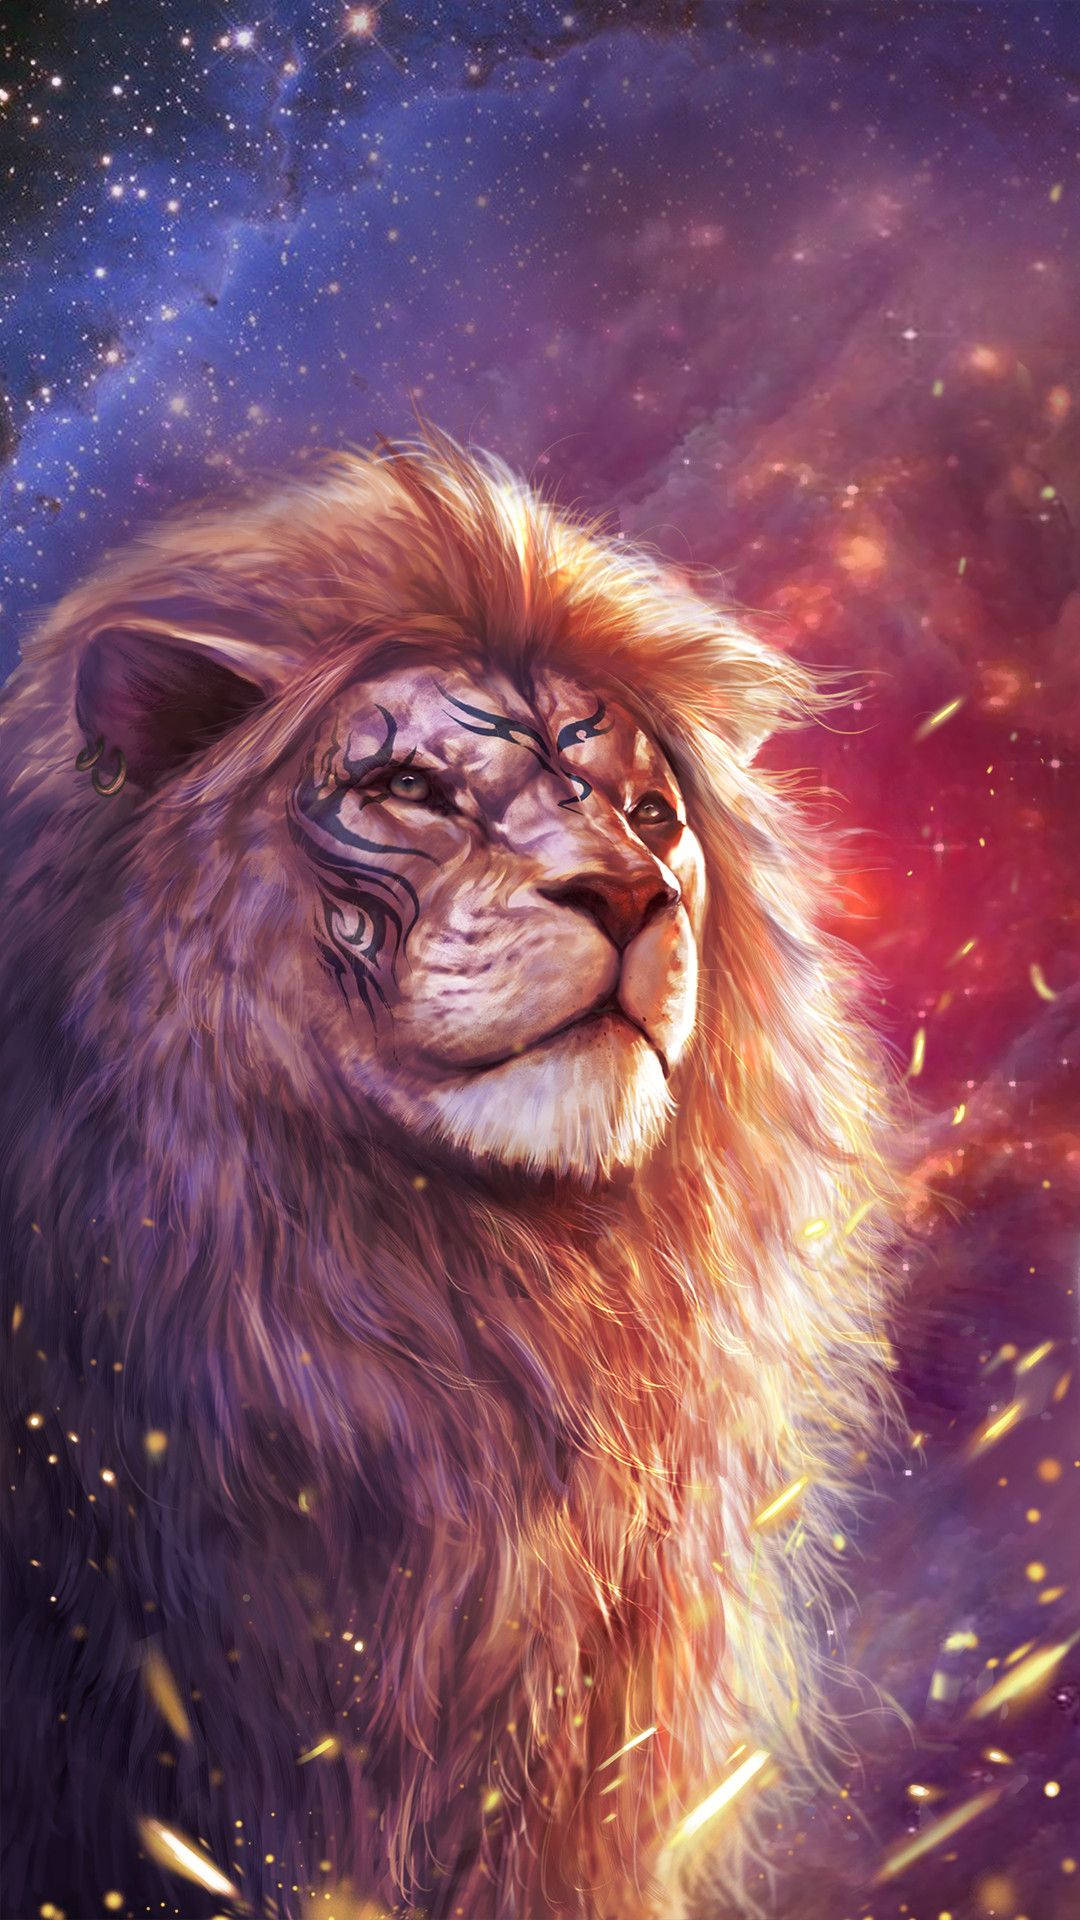 Roaring Lion Illustration Wallpaper